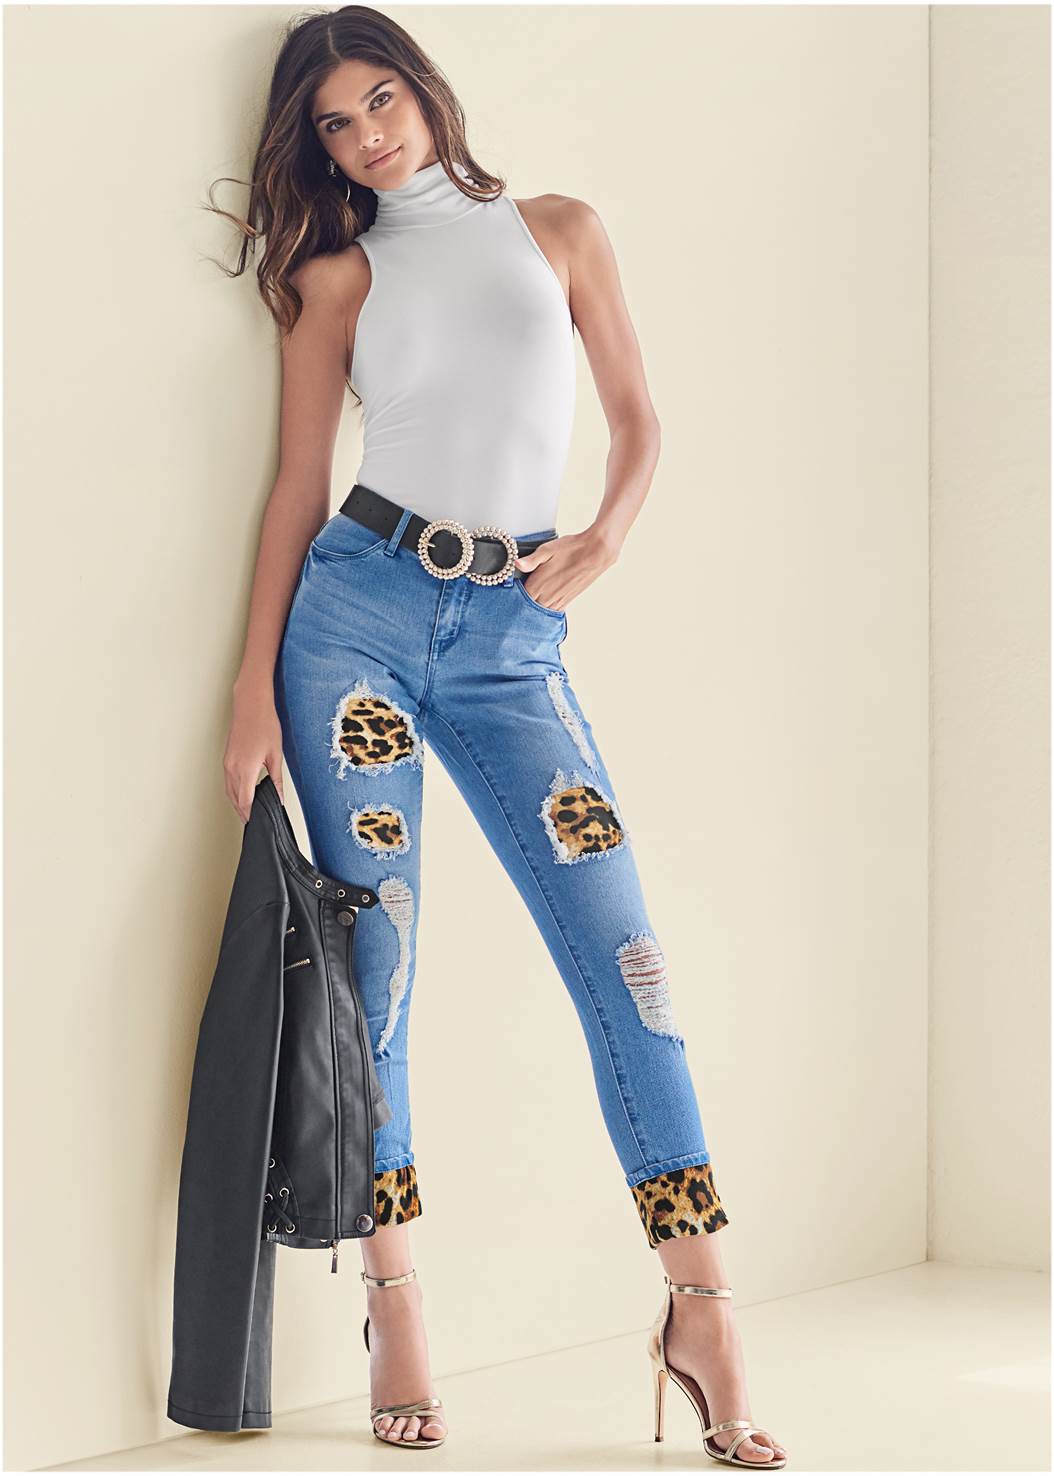 Leopard Print Trend, Dallas petite fashion